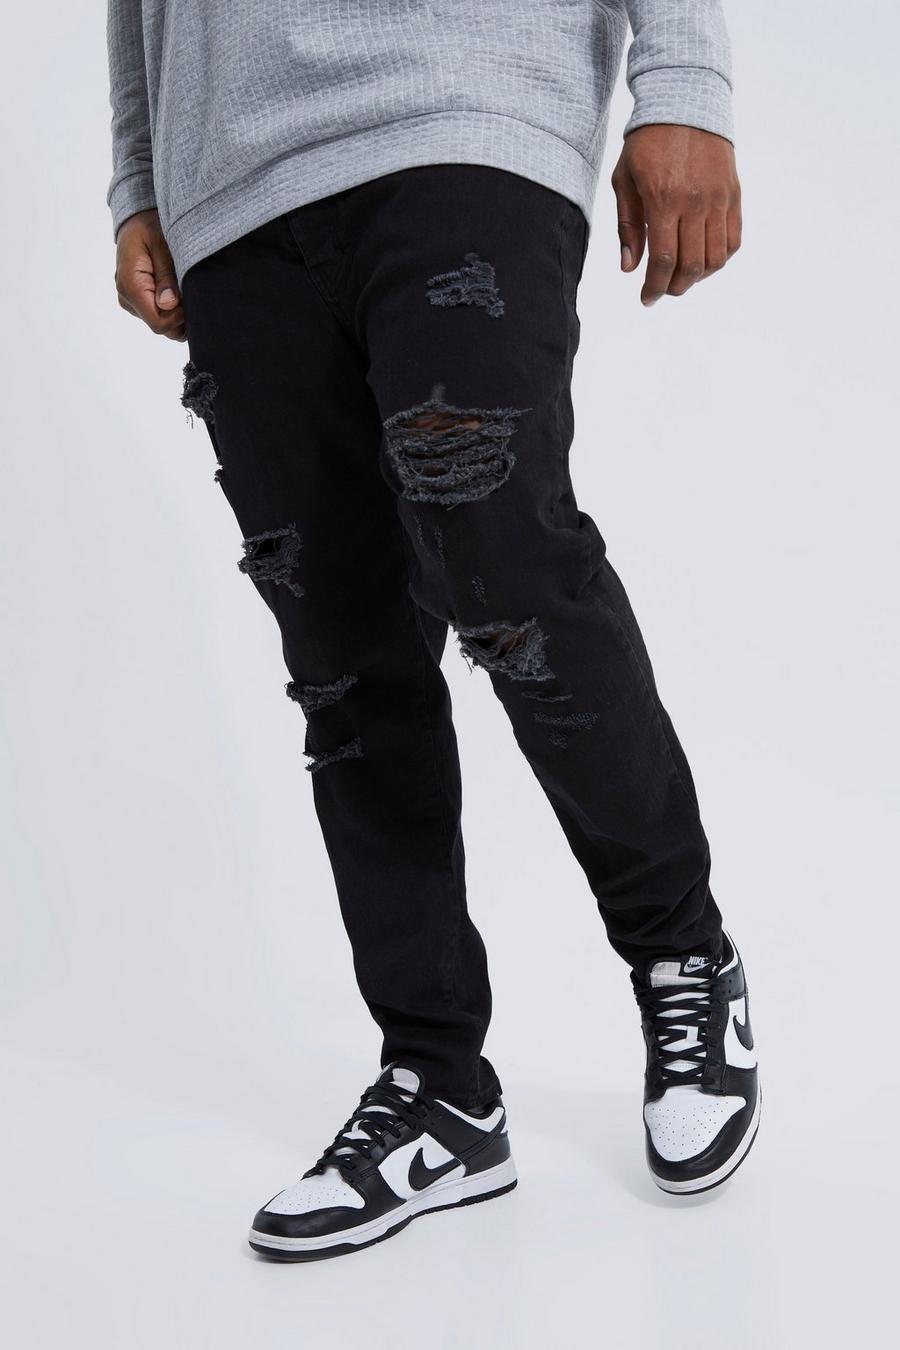 שחור אמיתי סקיני ג'ינס מבד נמתח עם קרעים לכל האורך למידות גדולות  